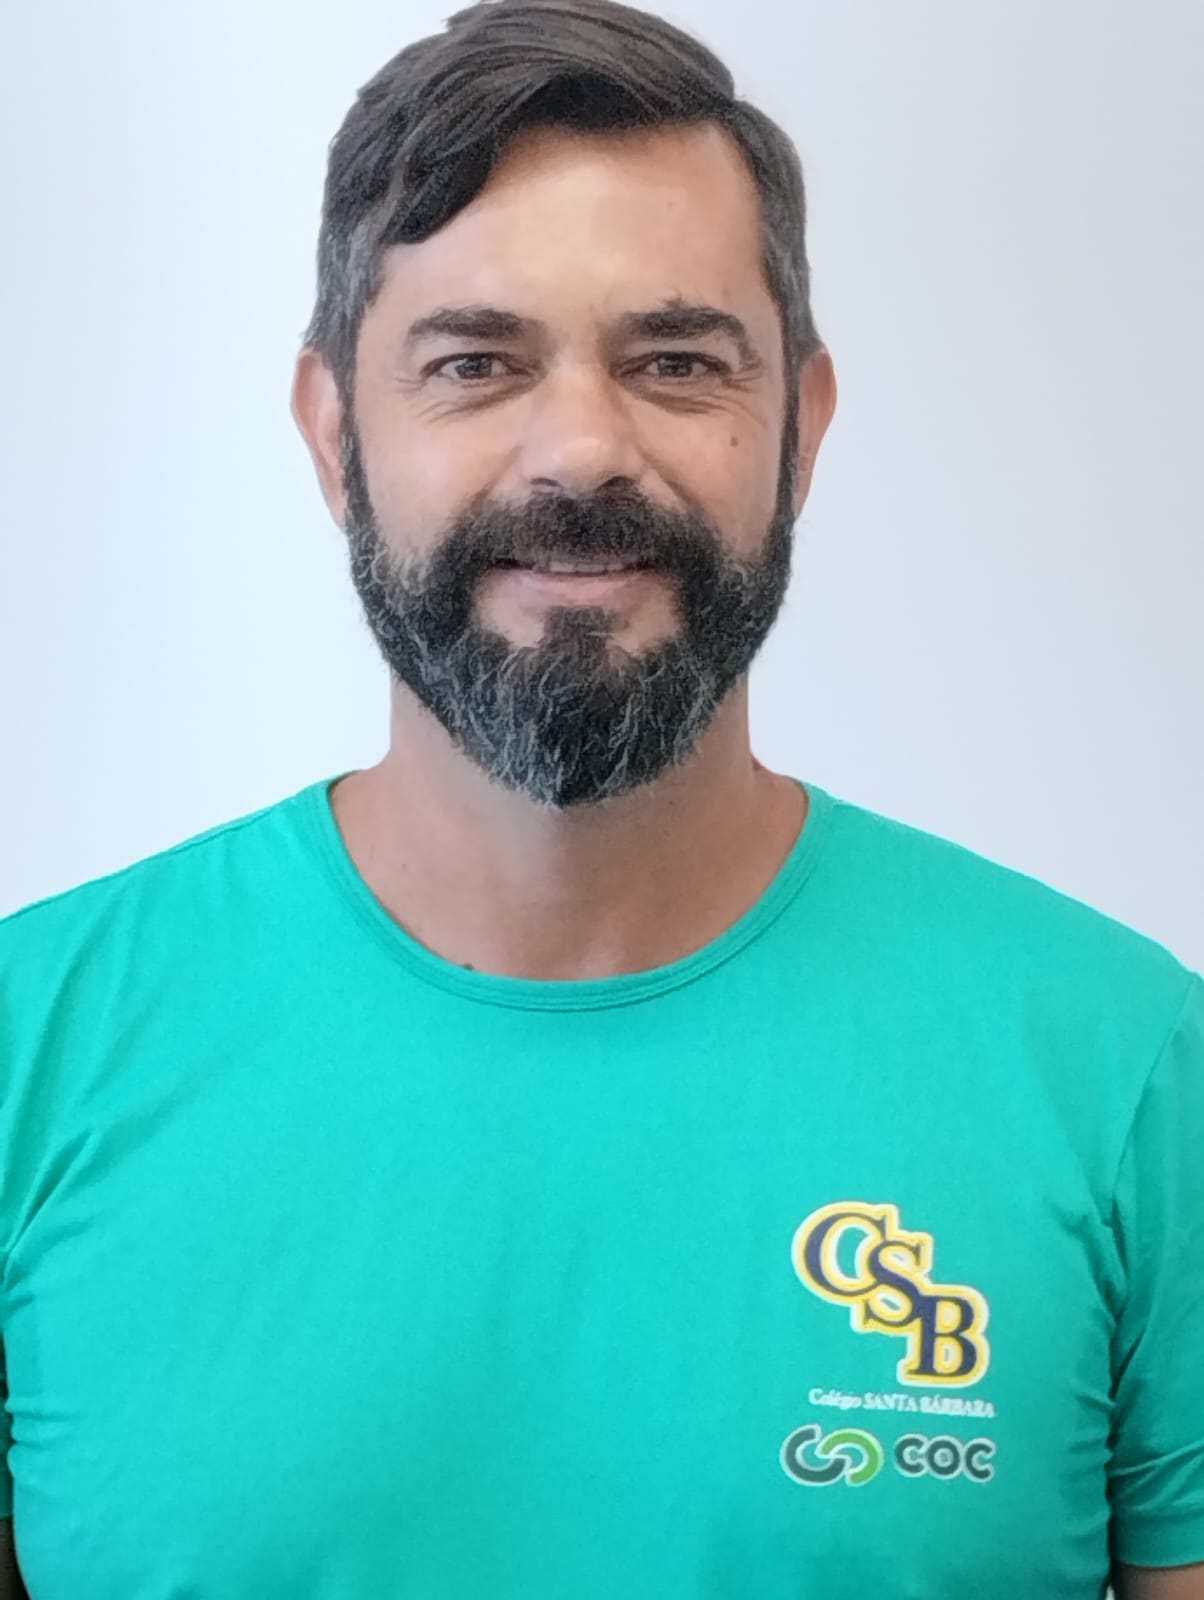 Juliano Barboza da Silva